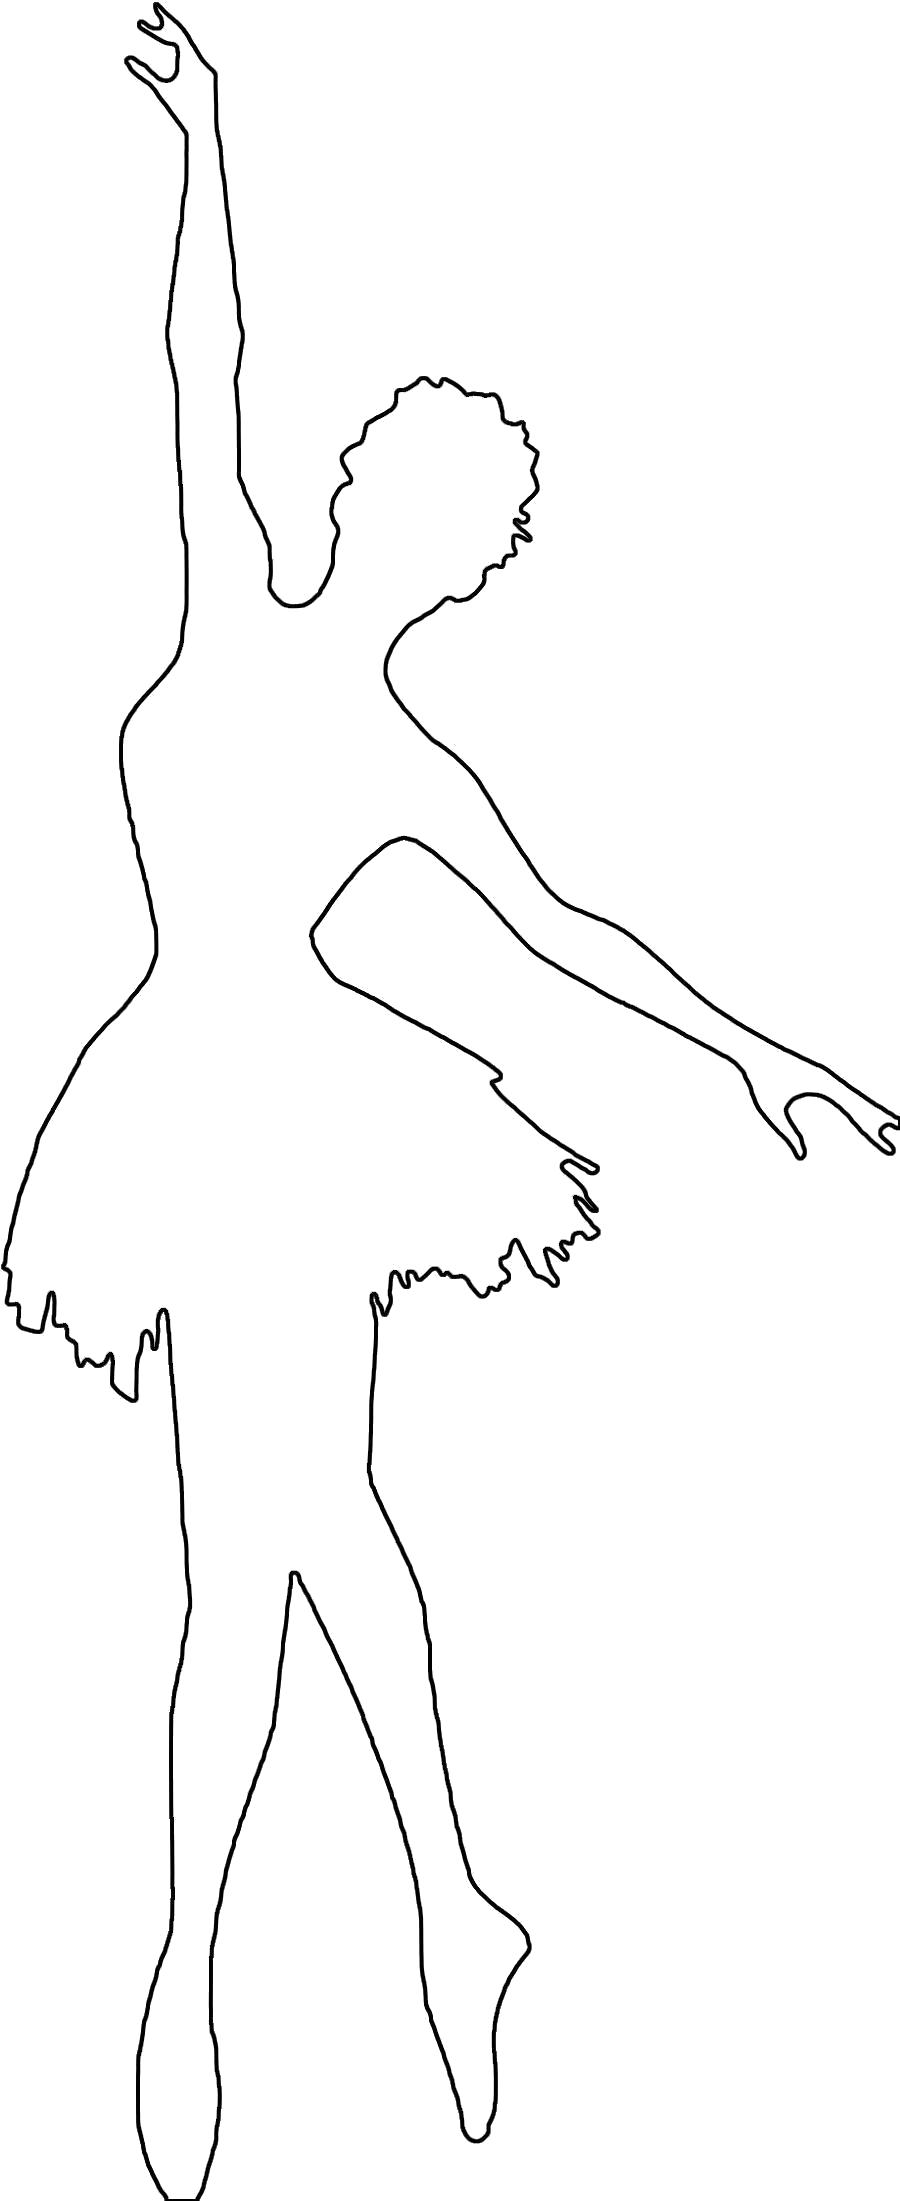 Раскраска Раскраски шаблоны балерин балерина контур для вырезки из бумаги, для детского творчества. Шаблон